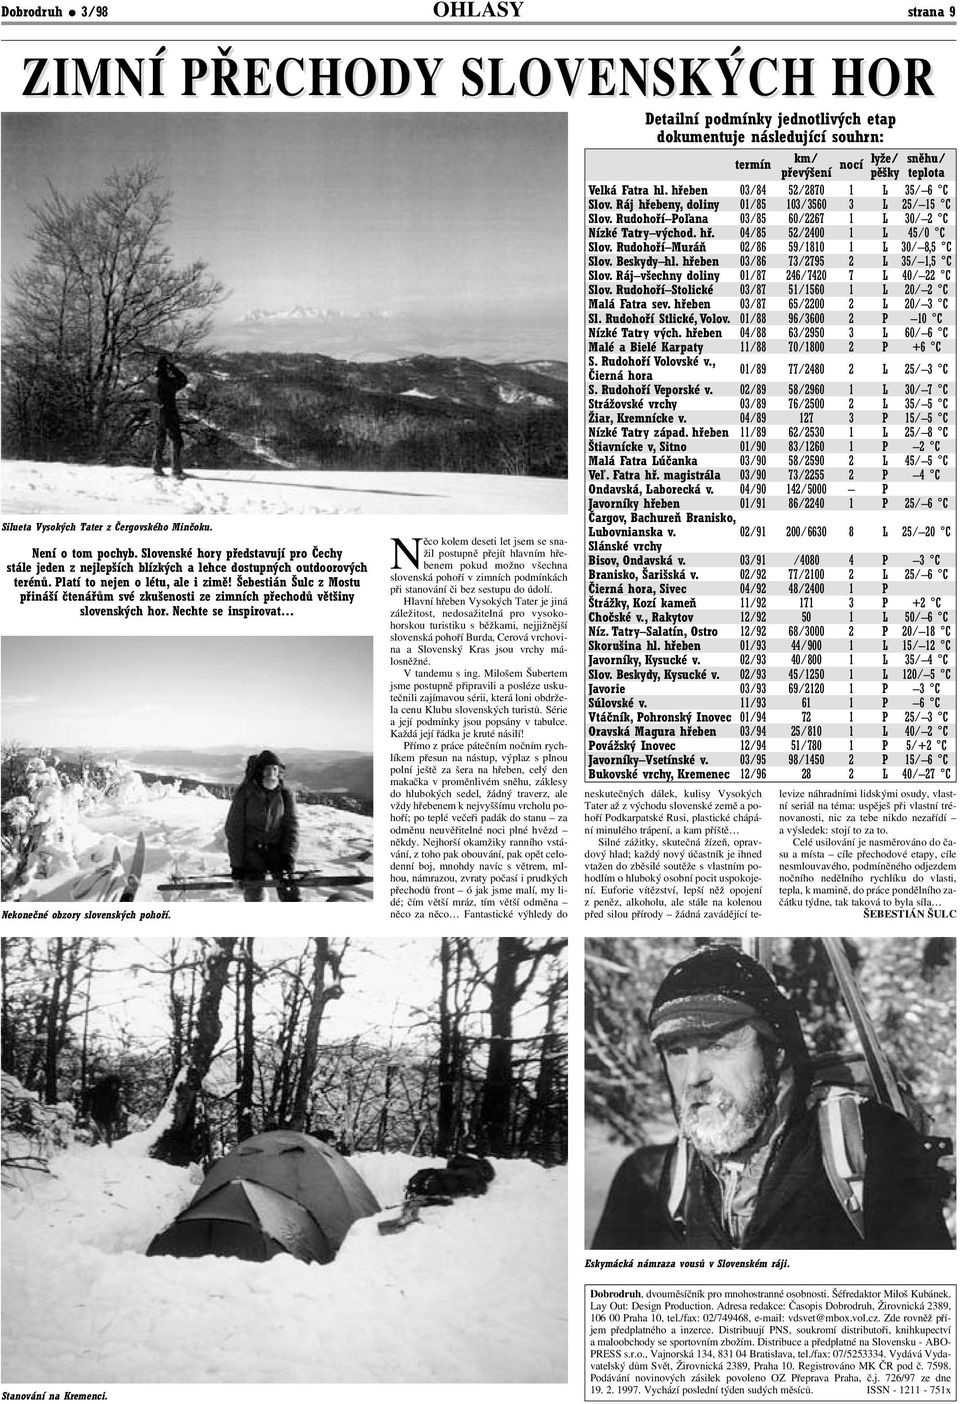 Šebestián Šulc z Mostu přináší čtenářům své zkušenosti ze zimních přechodů většiny slovenských hor. Nechte se inspirovat Nekonečné obzory slovenských pohoří.